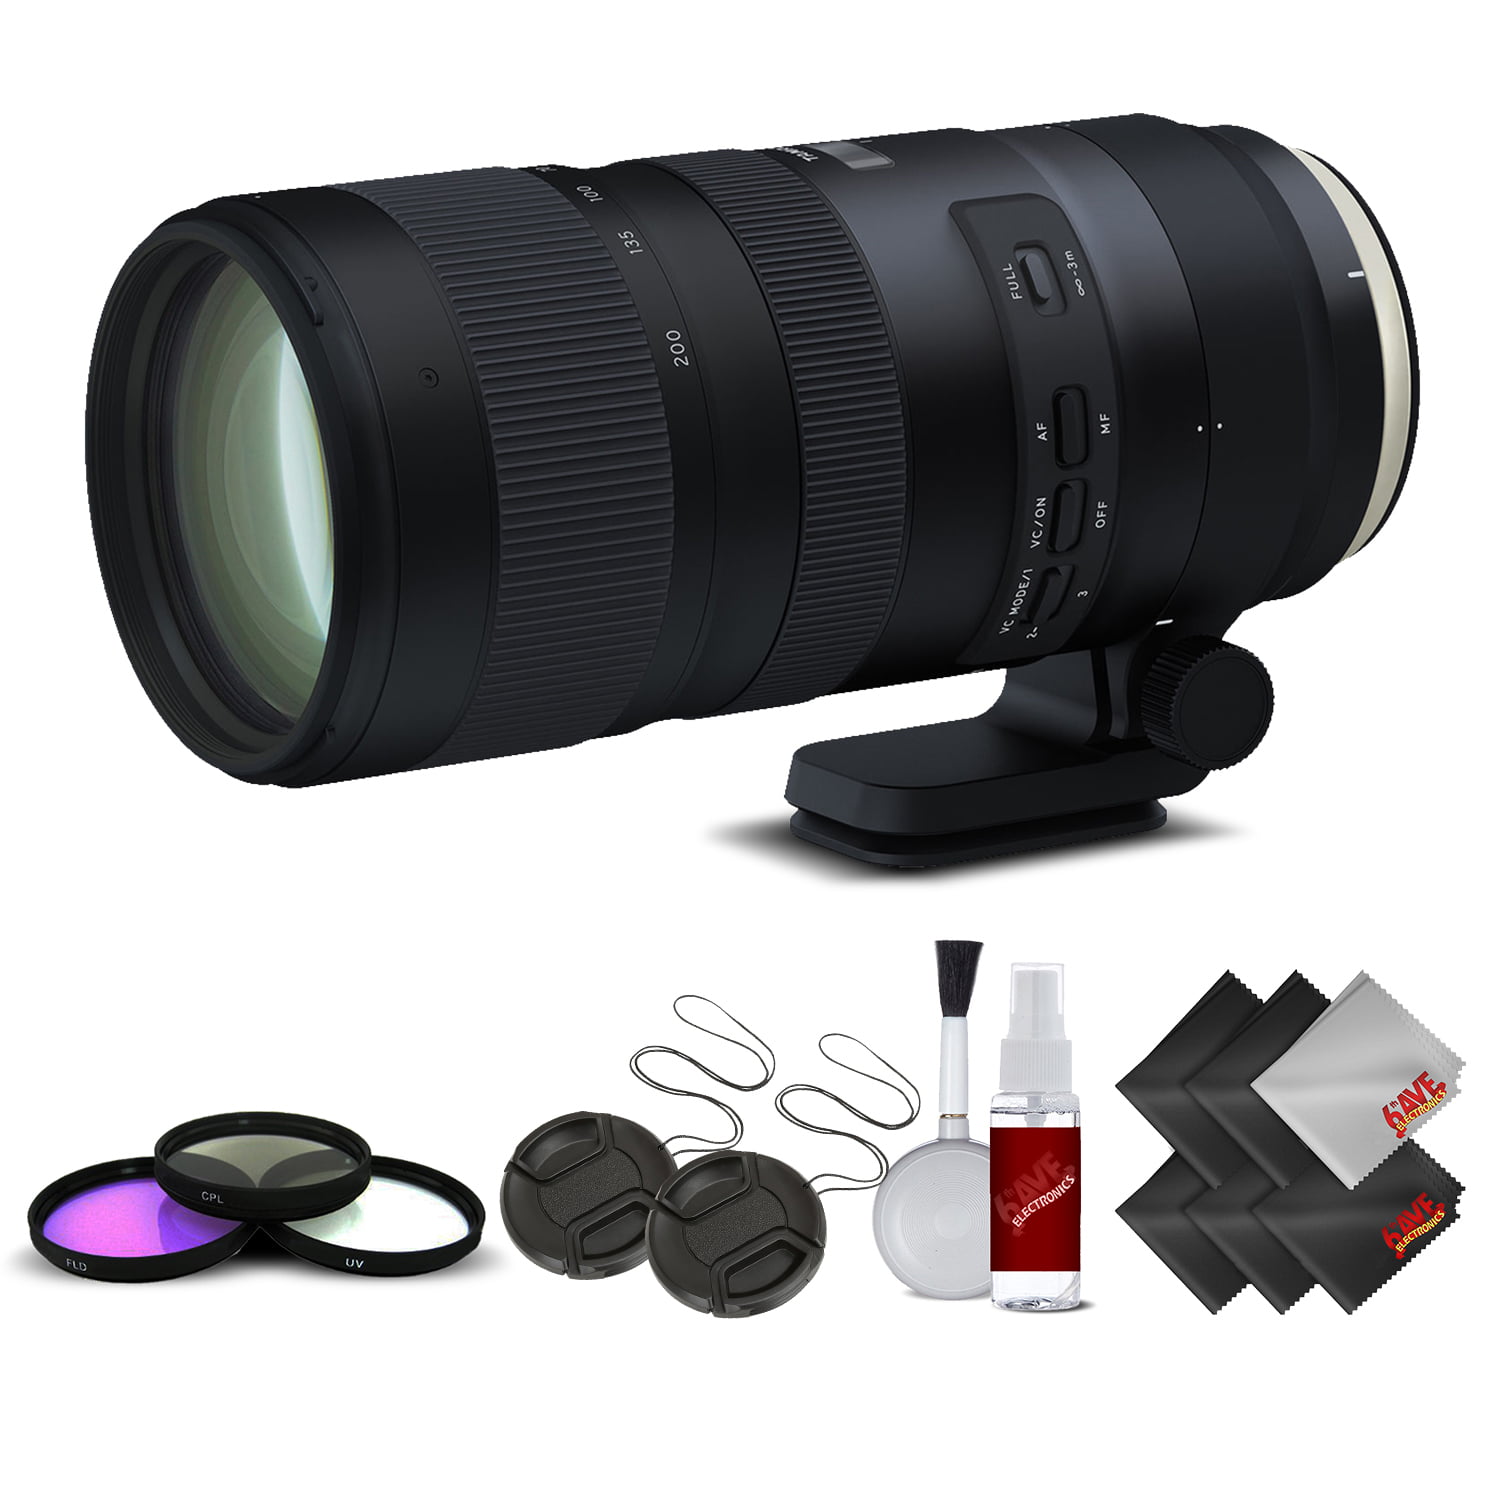 Tamron Sp 70 0mm F 2 8 Di Vc Usd G2 Lens For Canon Ef Intl Model No Warranty Base Kit Walmart Com Walmart Com